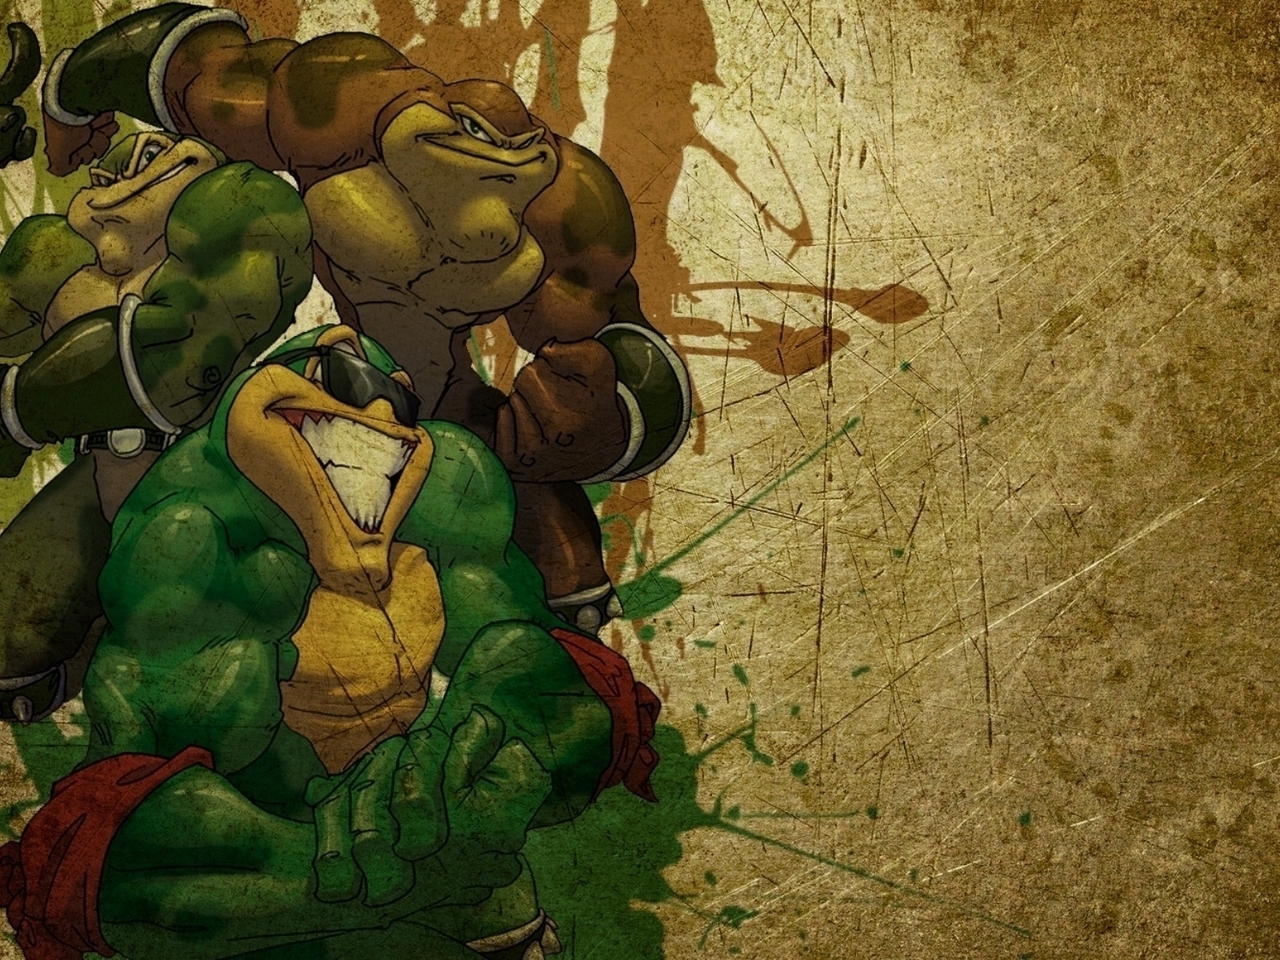 Картинка: Battletoads, Боевые жабы, лягушки, Pimpl, Rash, Zits, текстура, царапины